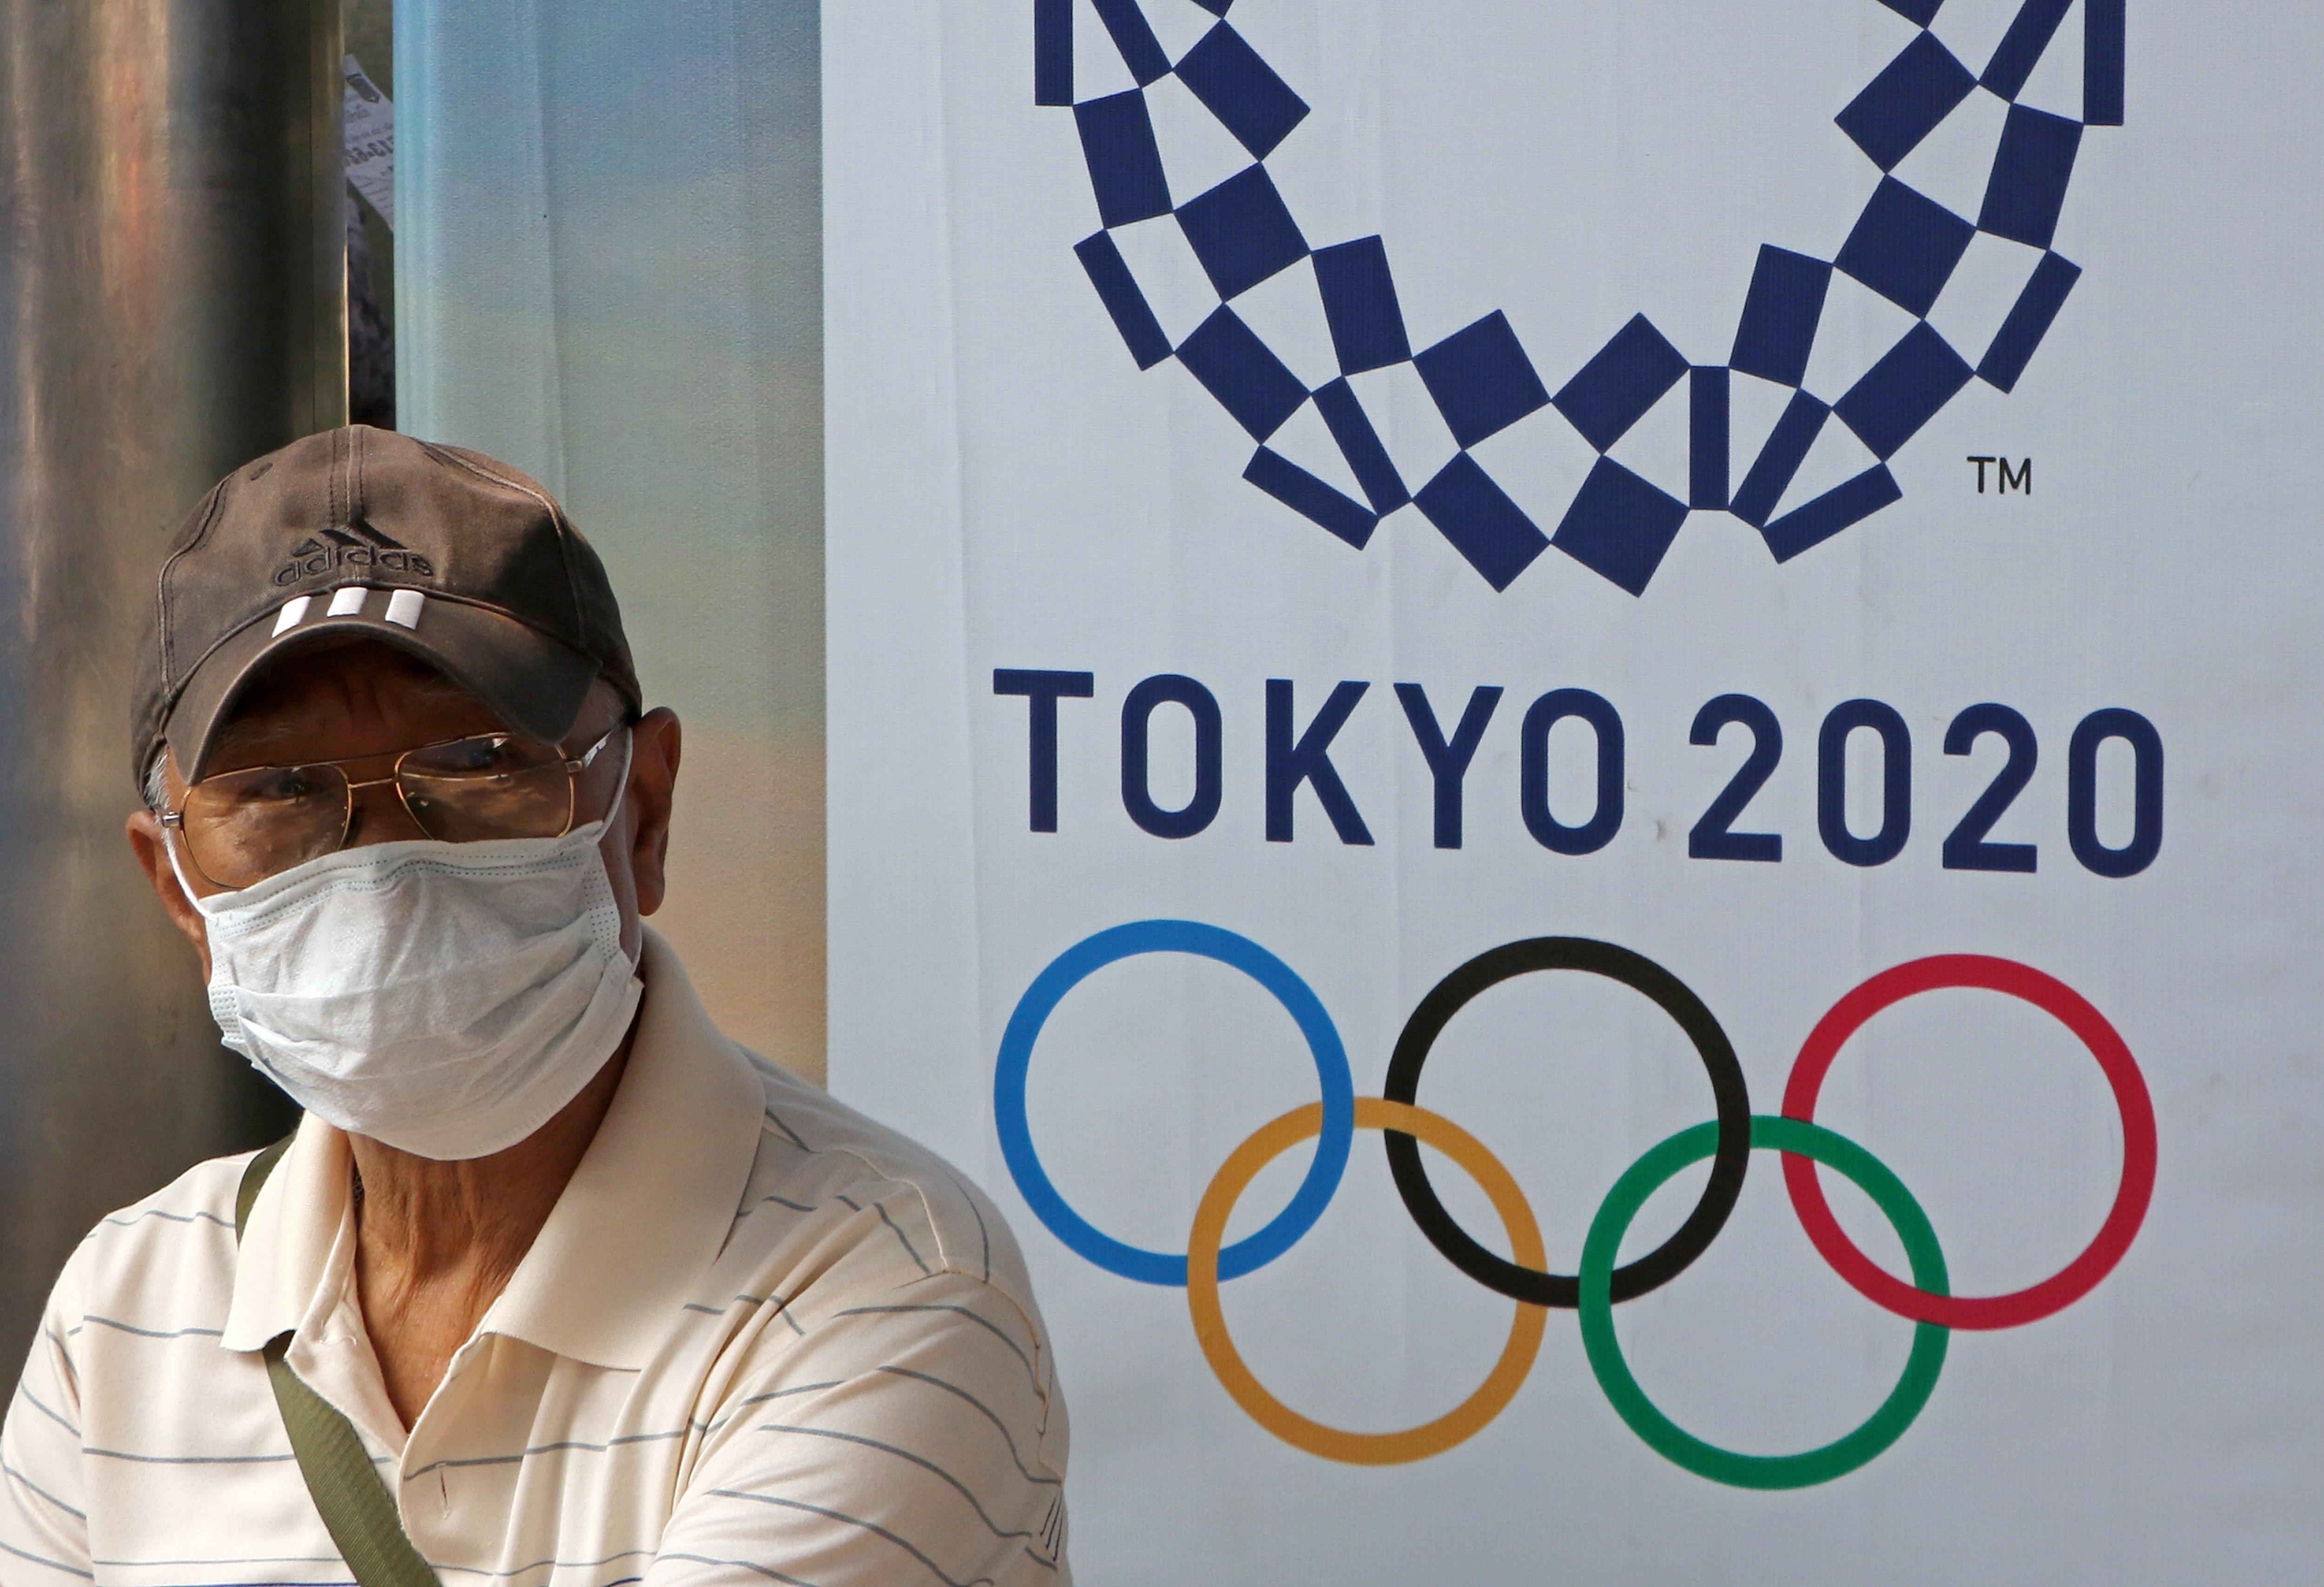 Un hombre lleva una mascarilla ante un cartel de Tokyo 2020